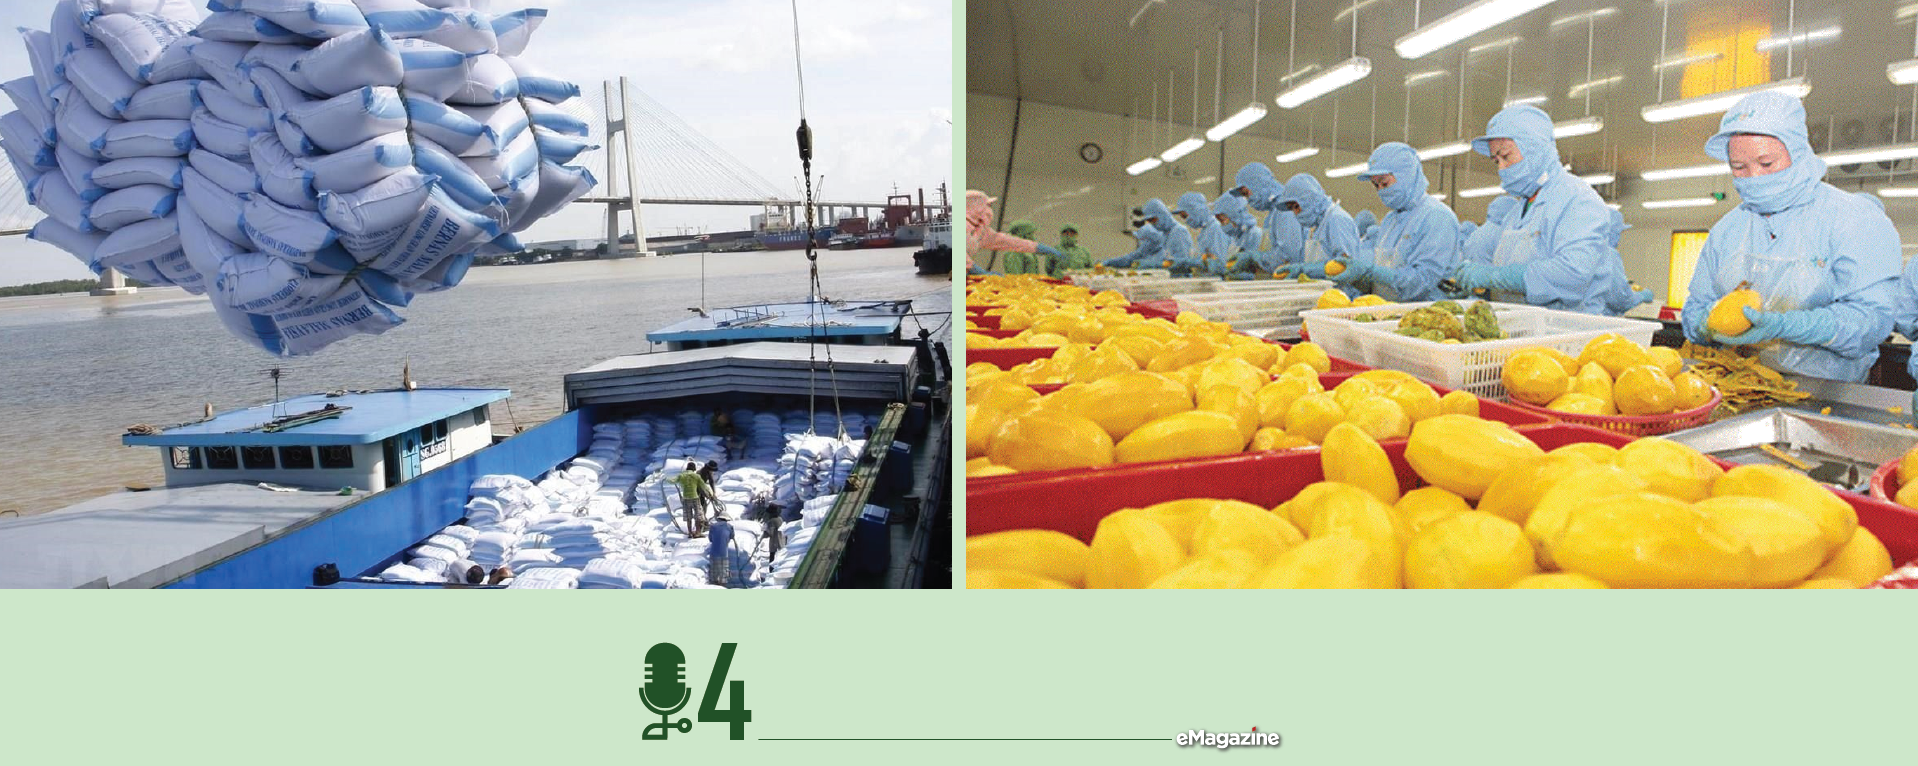 Xuất khẩu nông sản đang có nhiều cơ hội thuận lợi - Ảnh 5